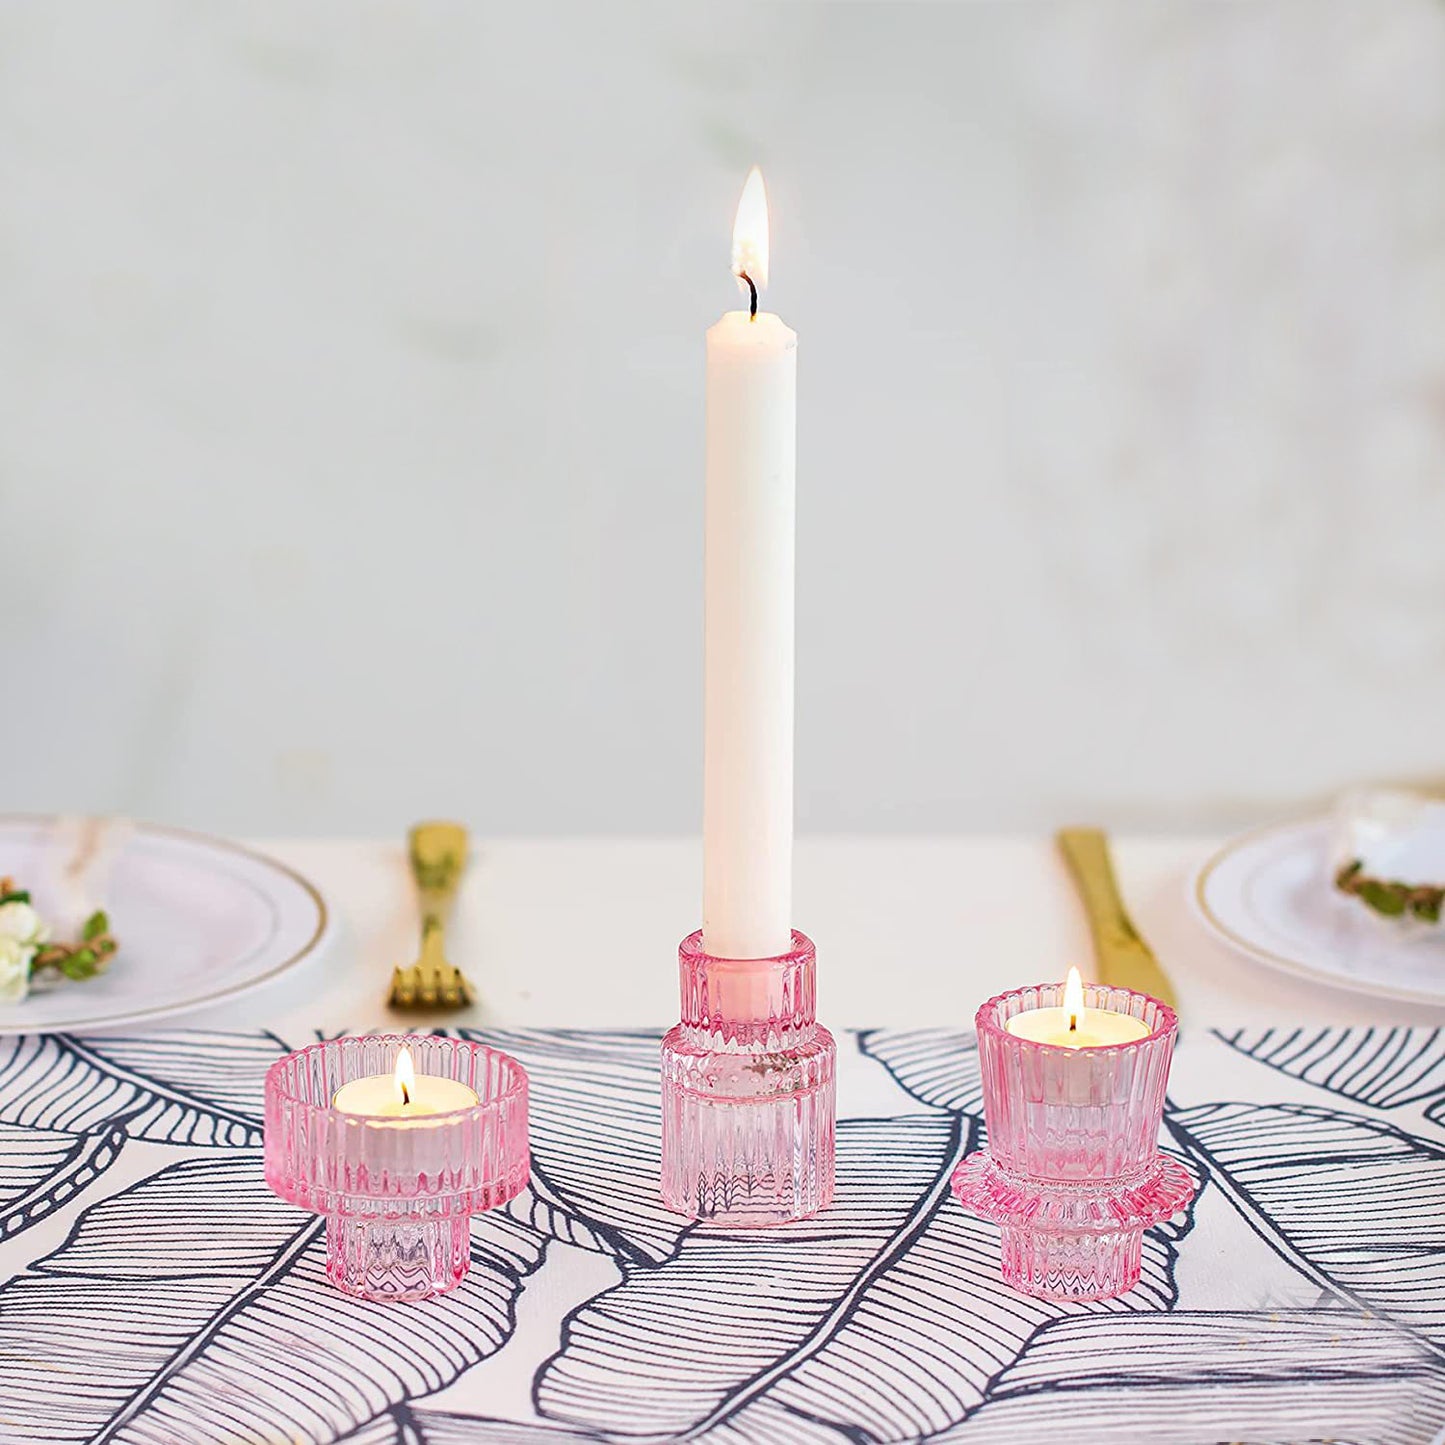 AnlarVo Pink Vintage Set of 3 Glass Candle Holder